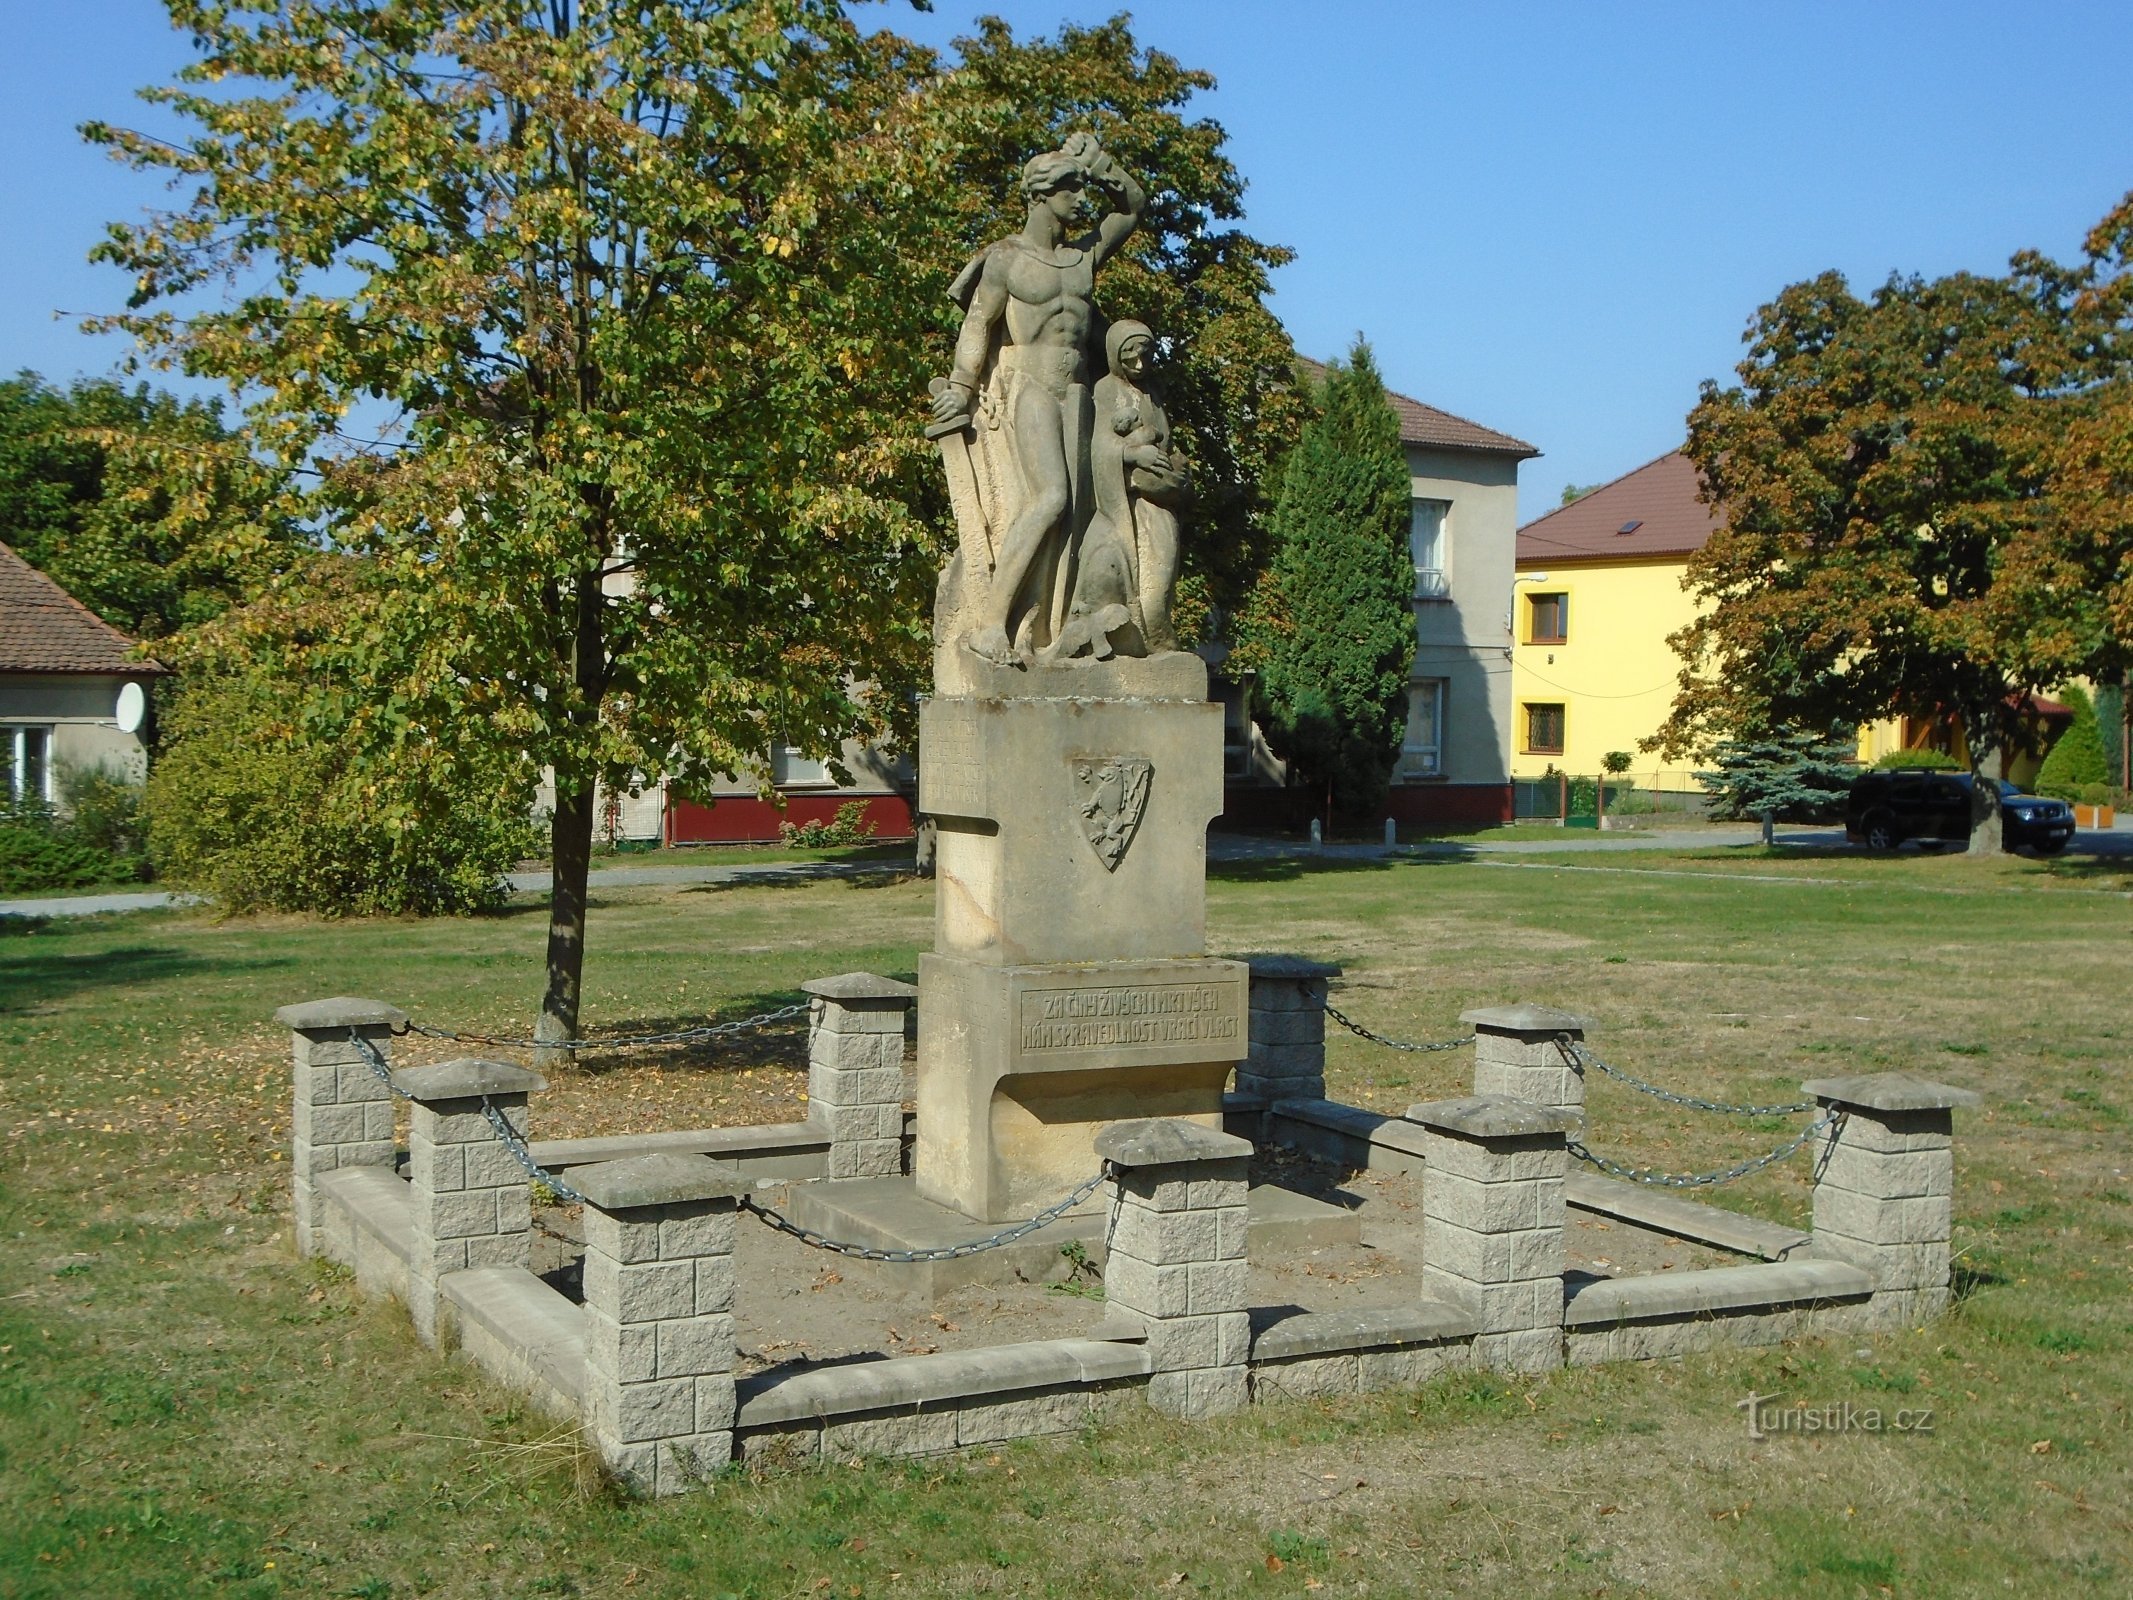 Đài tưởng niệm những người đã chết trong Chiến tranh thế giới thứ nhất (Vysoké Chvojno)